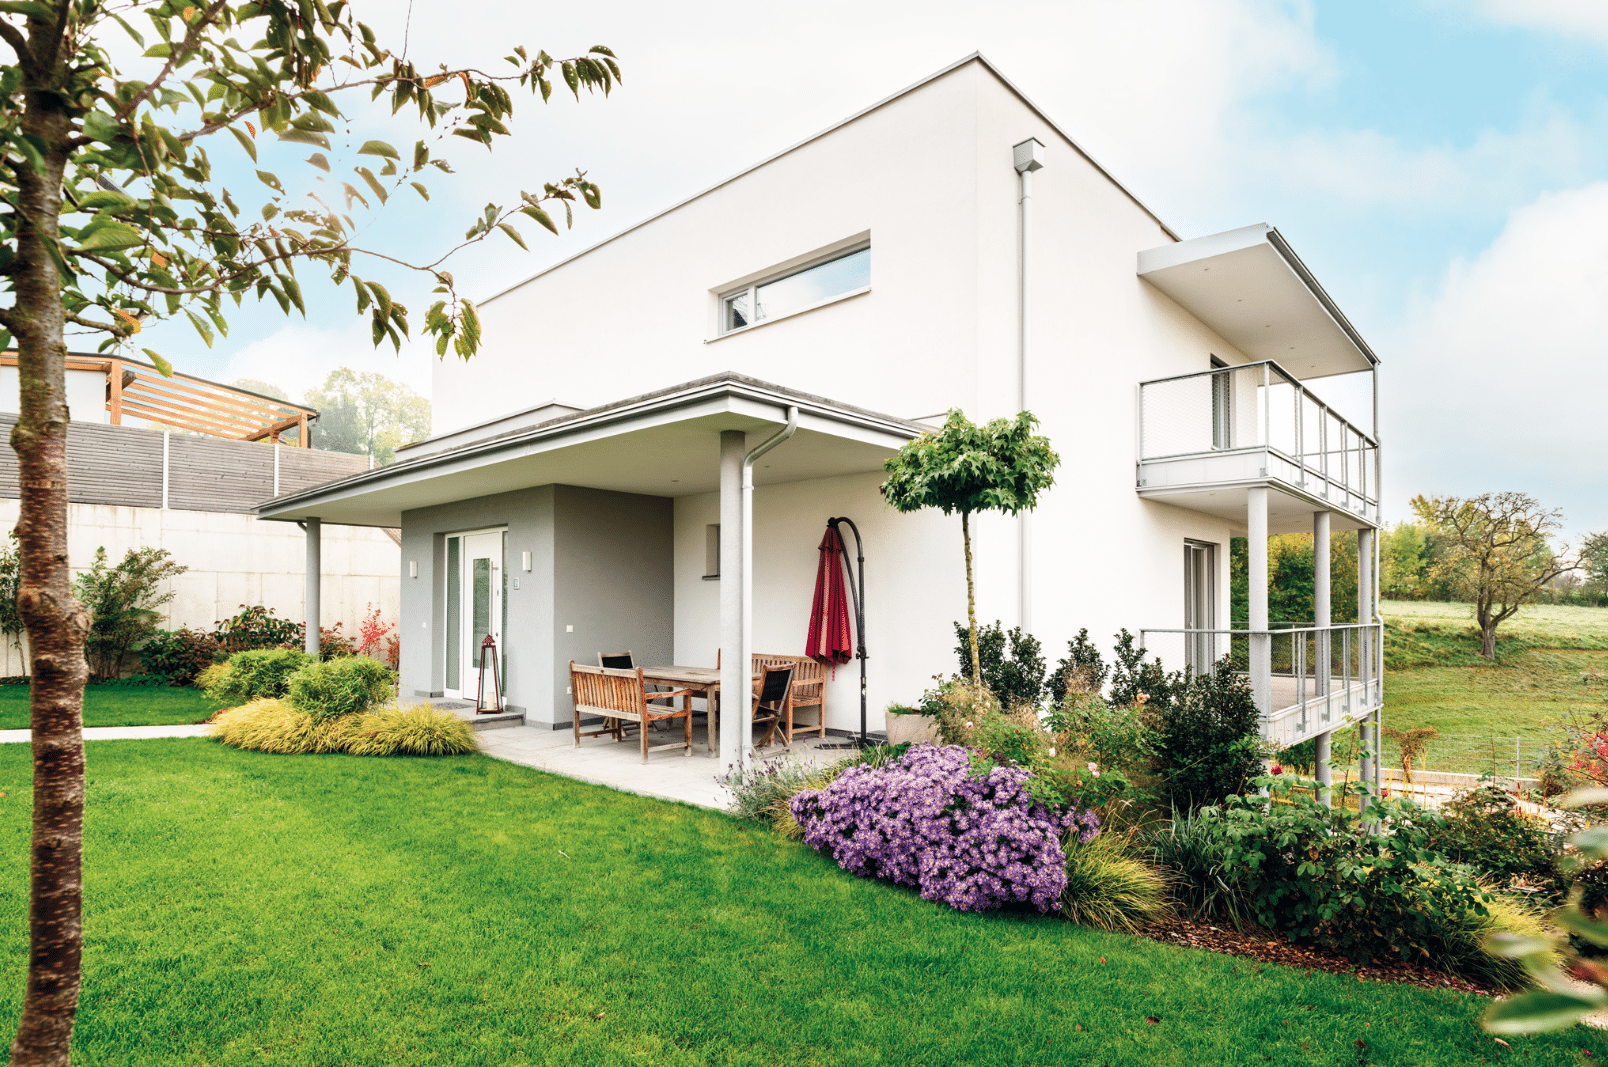 Bad Zeller zeigt ein einstöckiges Haus mit Flachdach, Balkon, Terrasse, bepflanztem Hang und Holzmöbel.